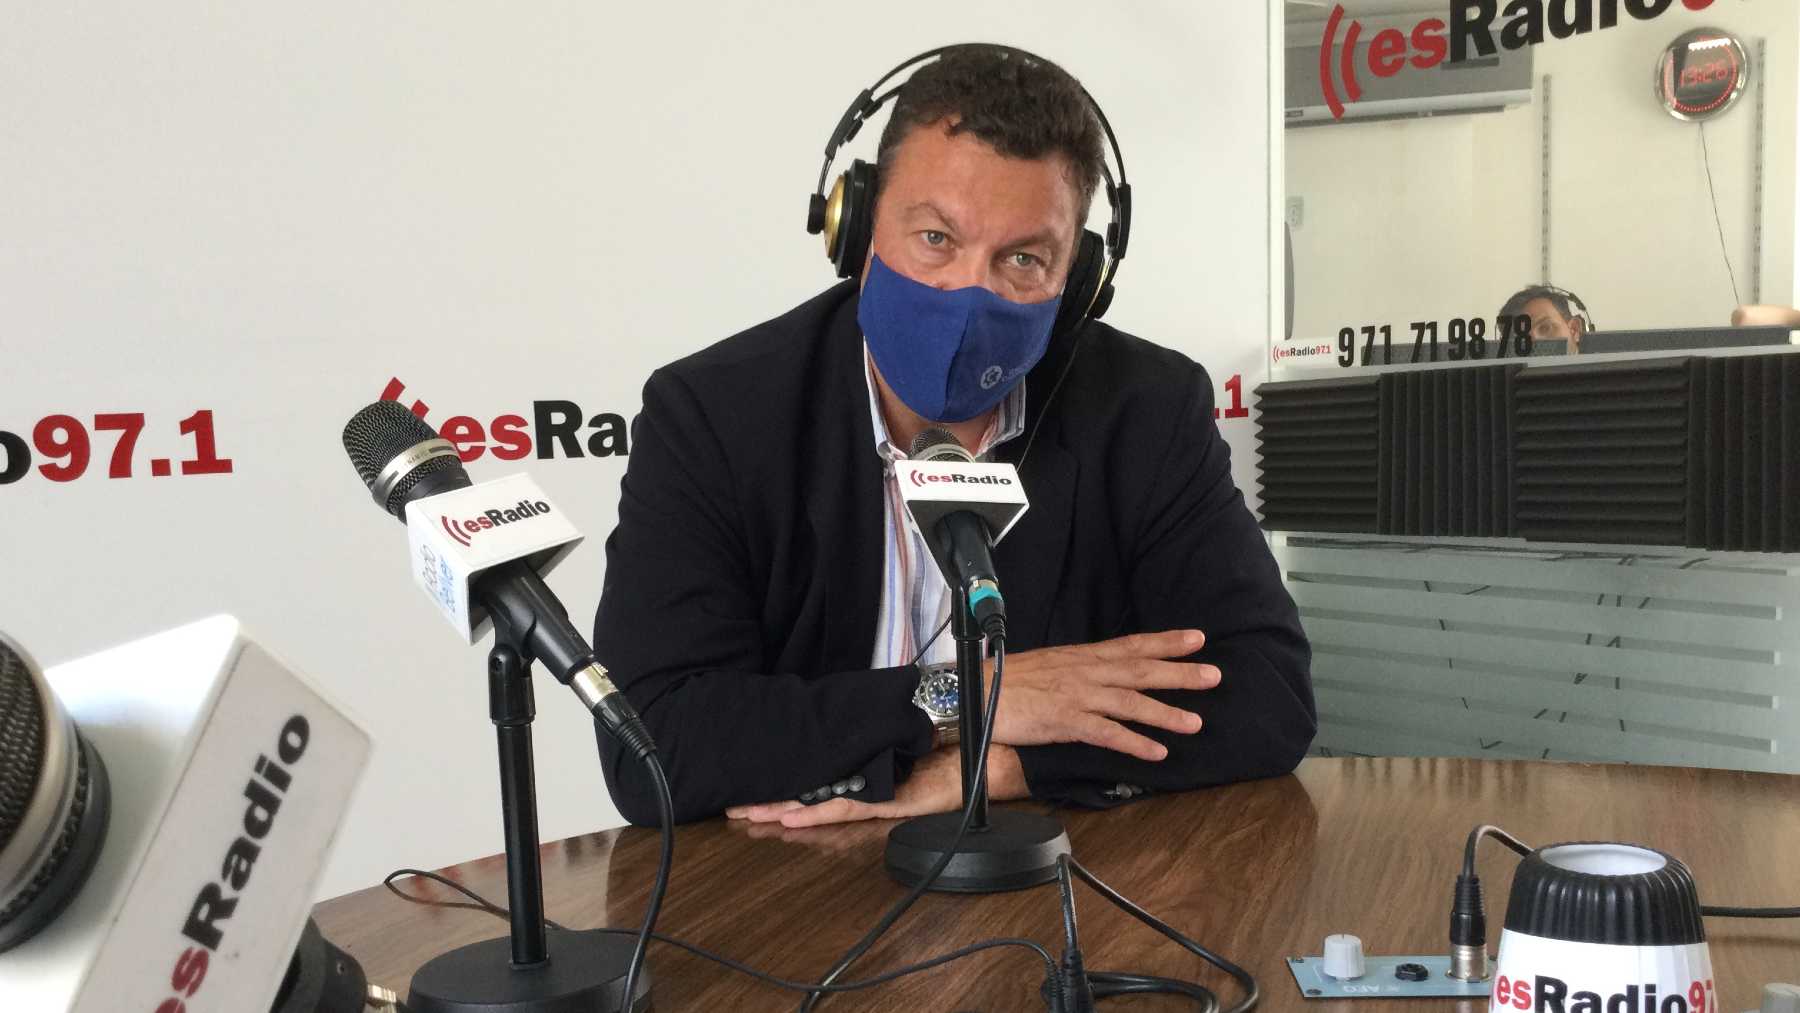 El detective y experto en Seguridad, Juan Carlos Cabanach, en los micrófonos de esRadio97.1.